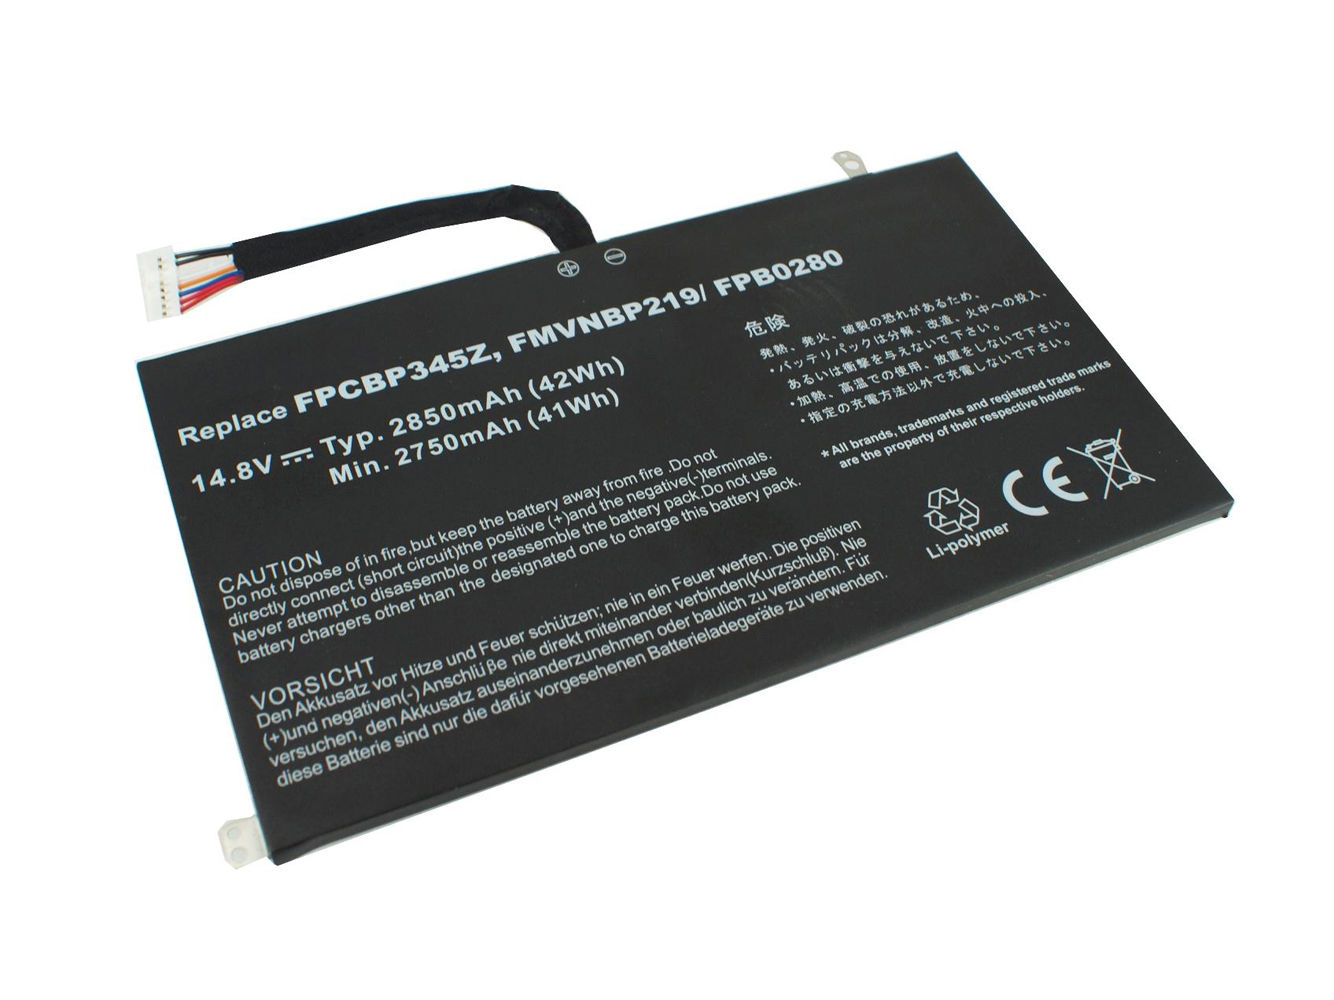 Batterie pour 2850mAh Fujitsu UH572 FMVNBP219 FPB0280 FPCBP345Z(compatible)